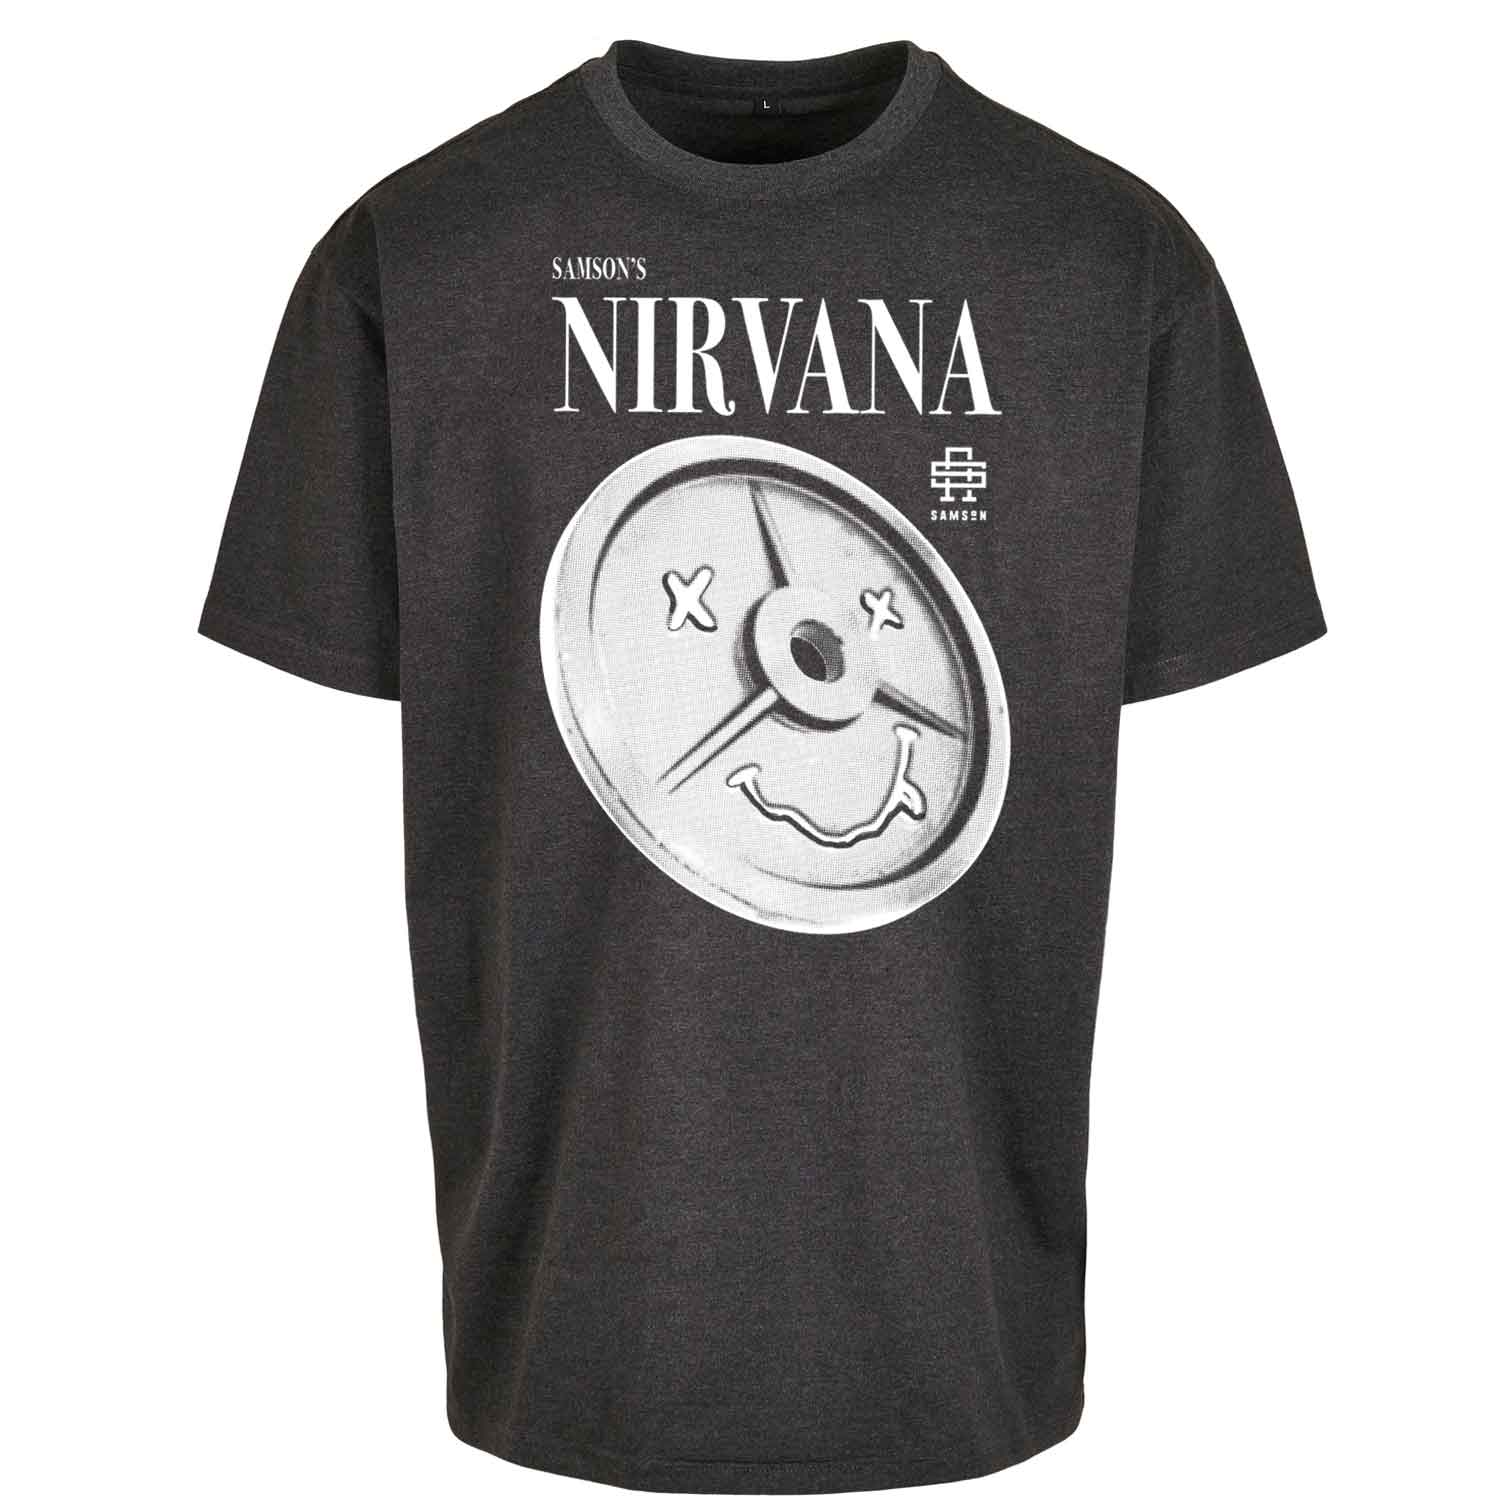 Samson's Nirvana Oversized T-Shirt